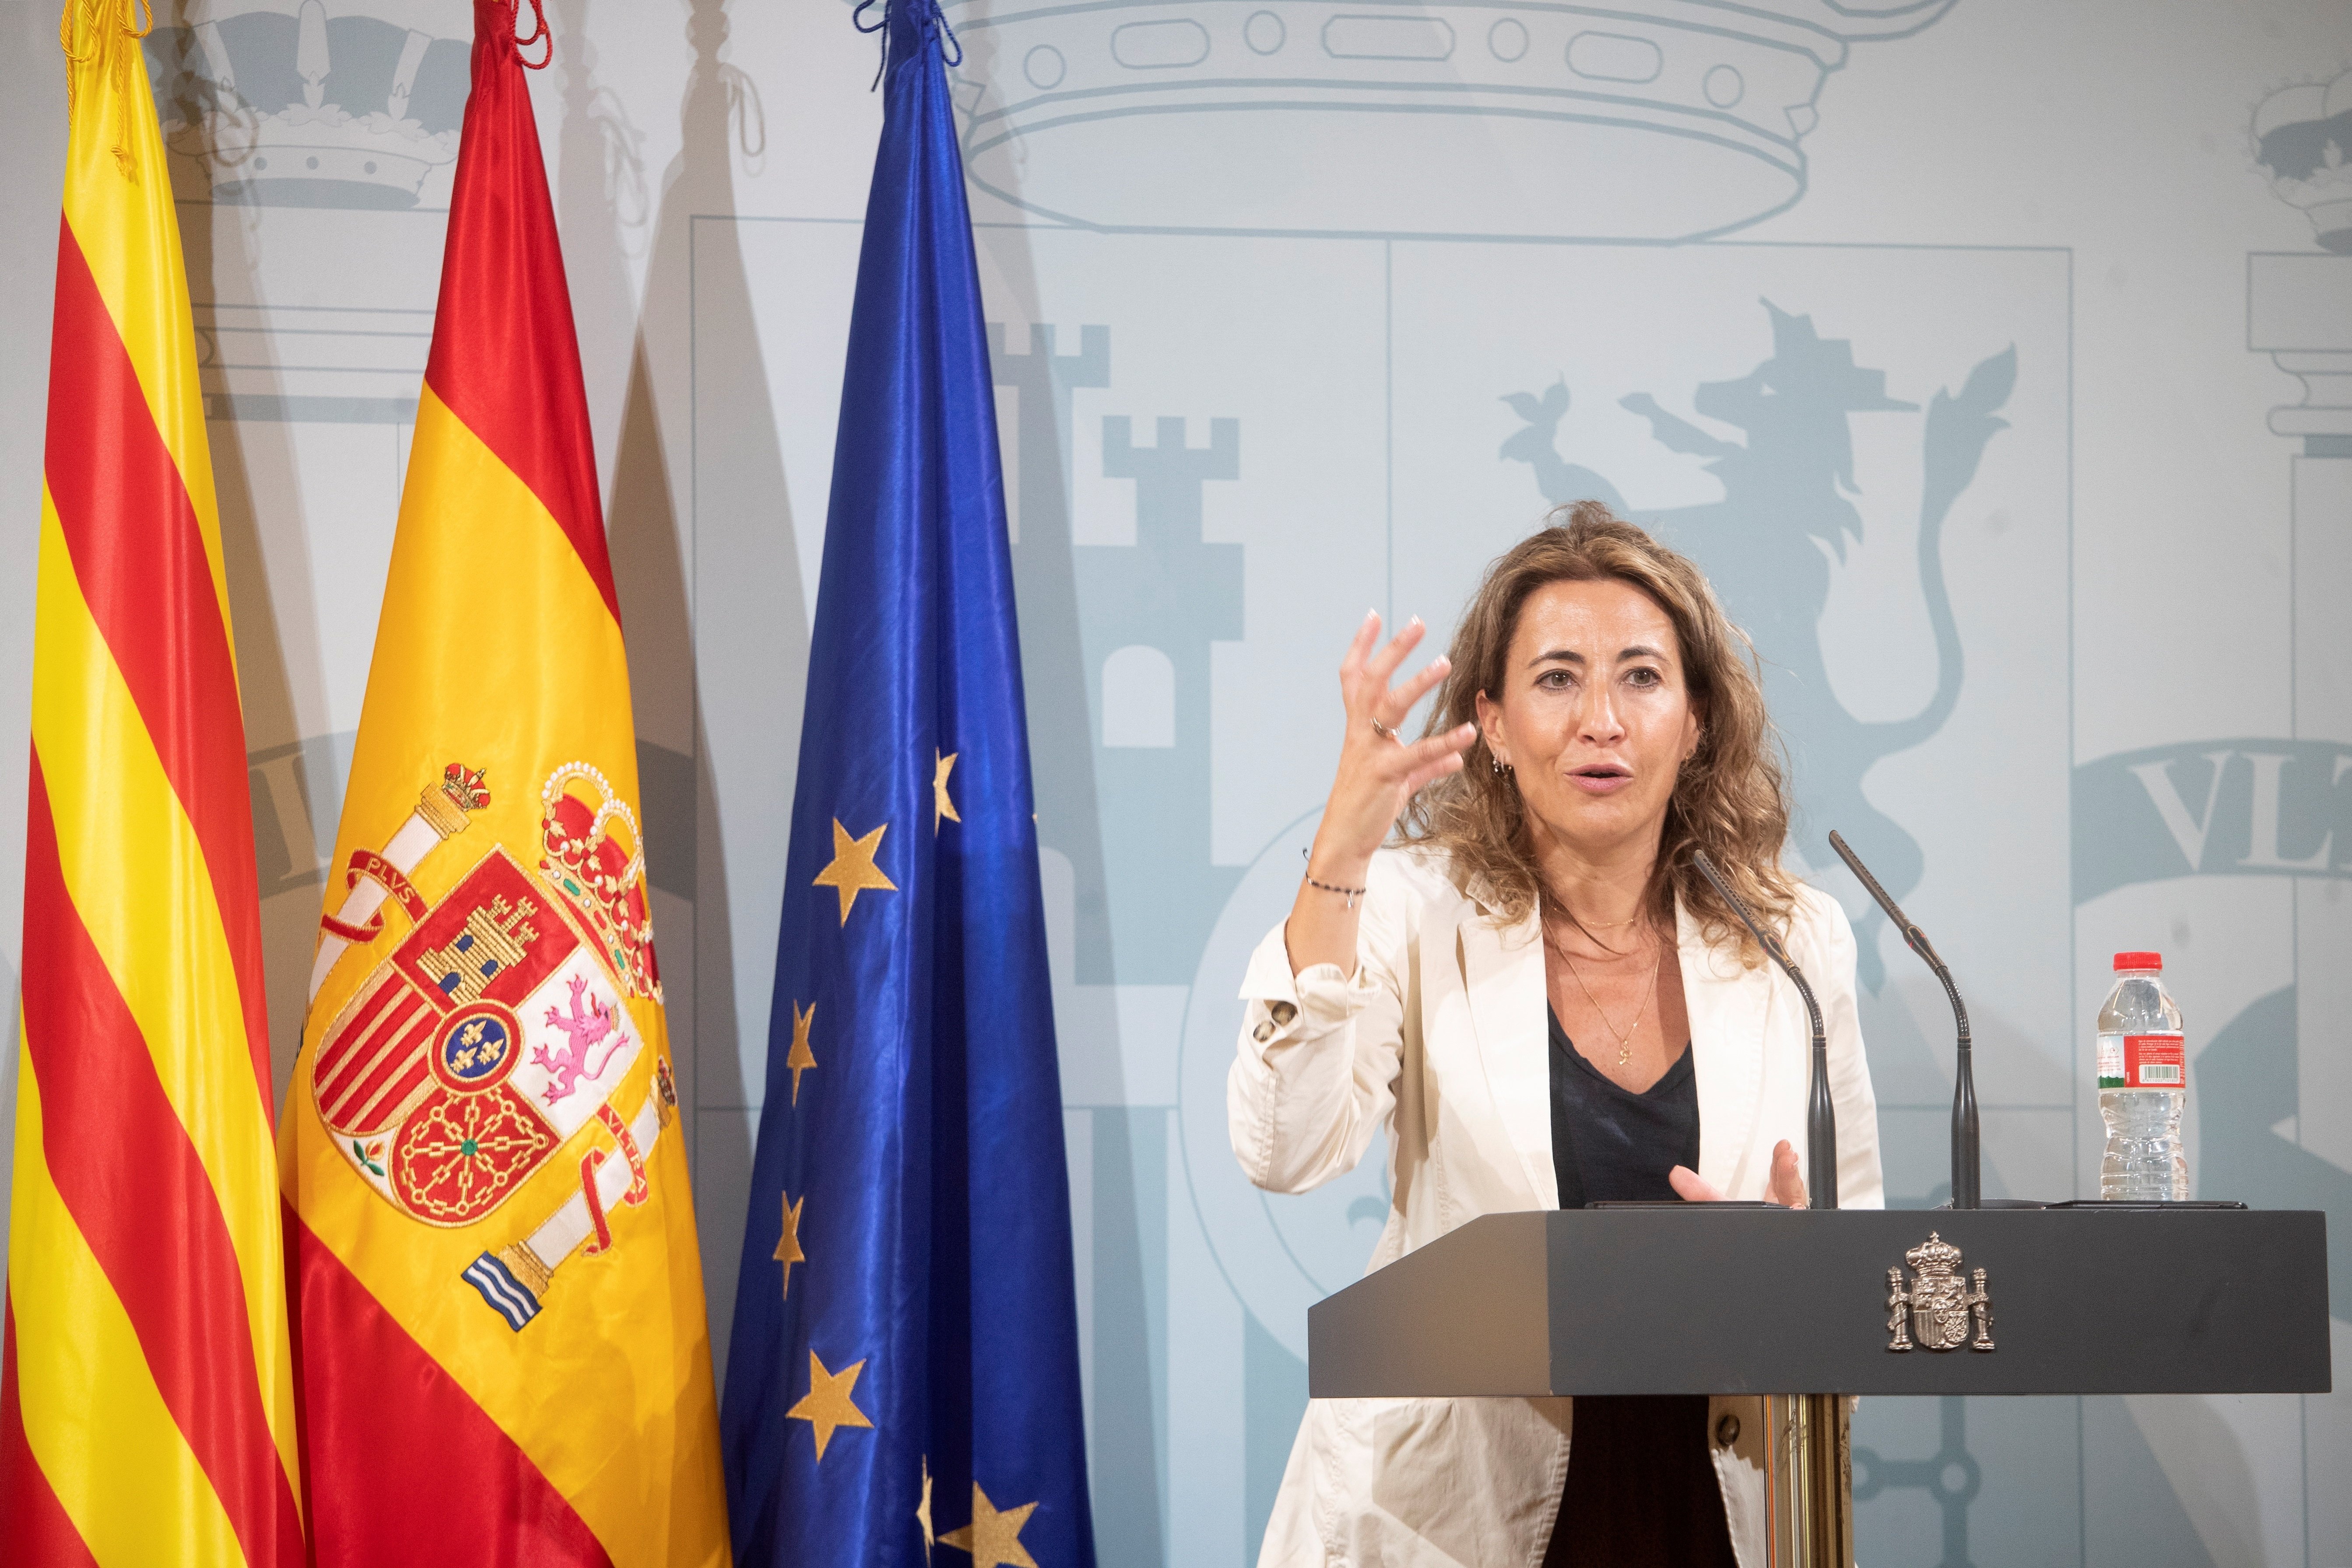 Raquel Sánchez vol que l'ampliació de l'aeroport de Barcelona sigui "exemplar"